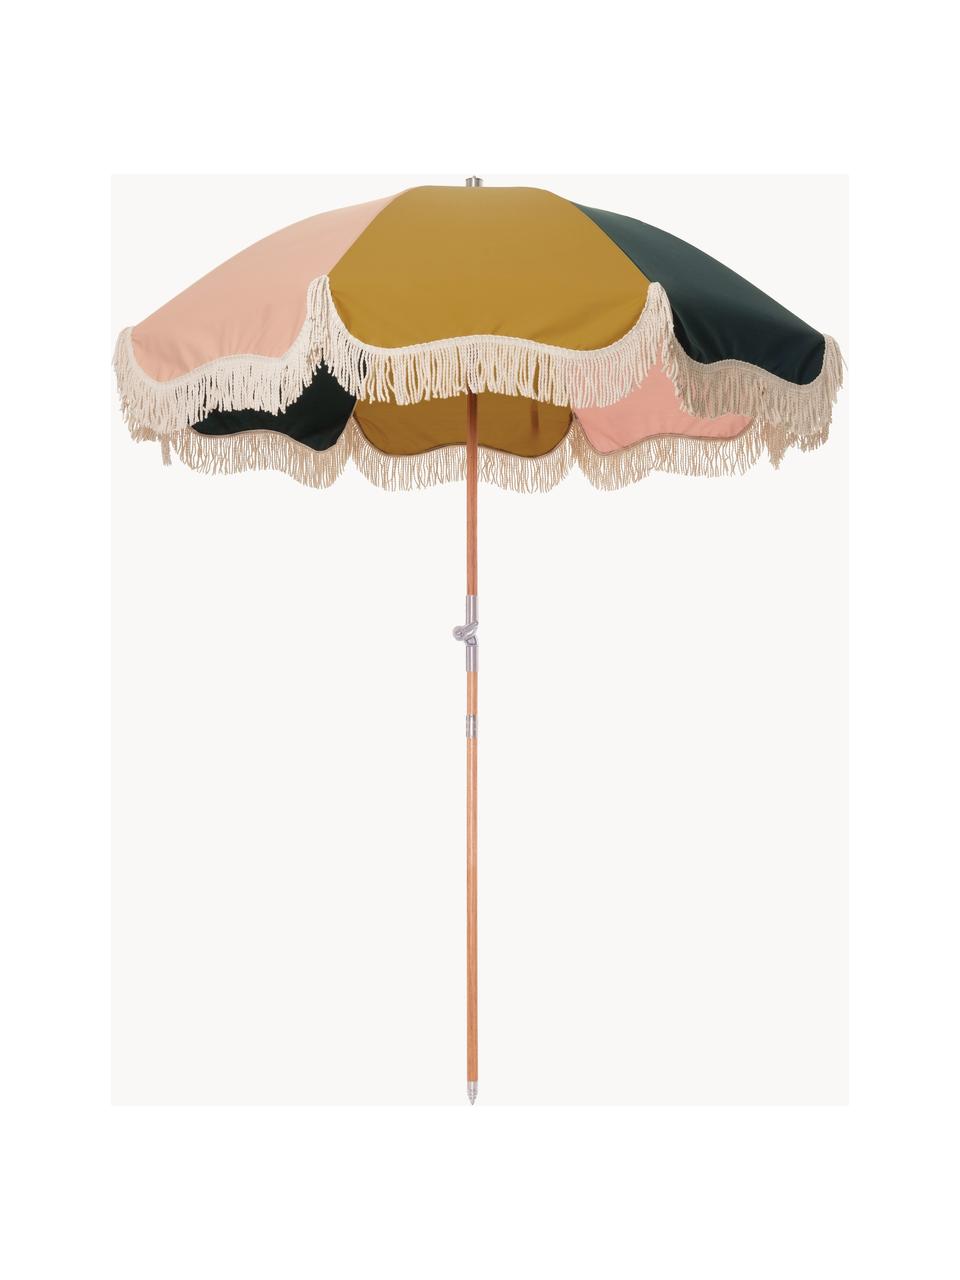 Parasol inclinable avec franges Retro, Ø 180 cm, Ocre, rose pâle, noir, blanc crème, Ø 180 x haut. 230 cm